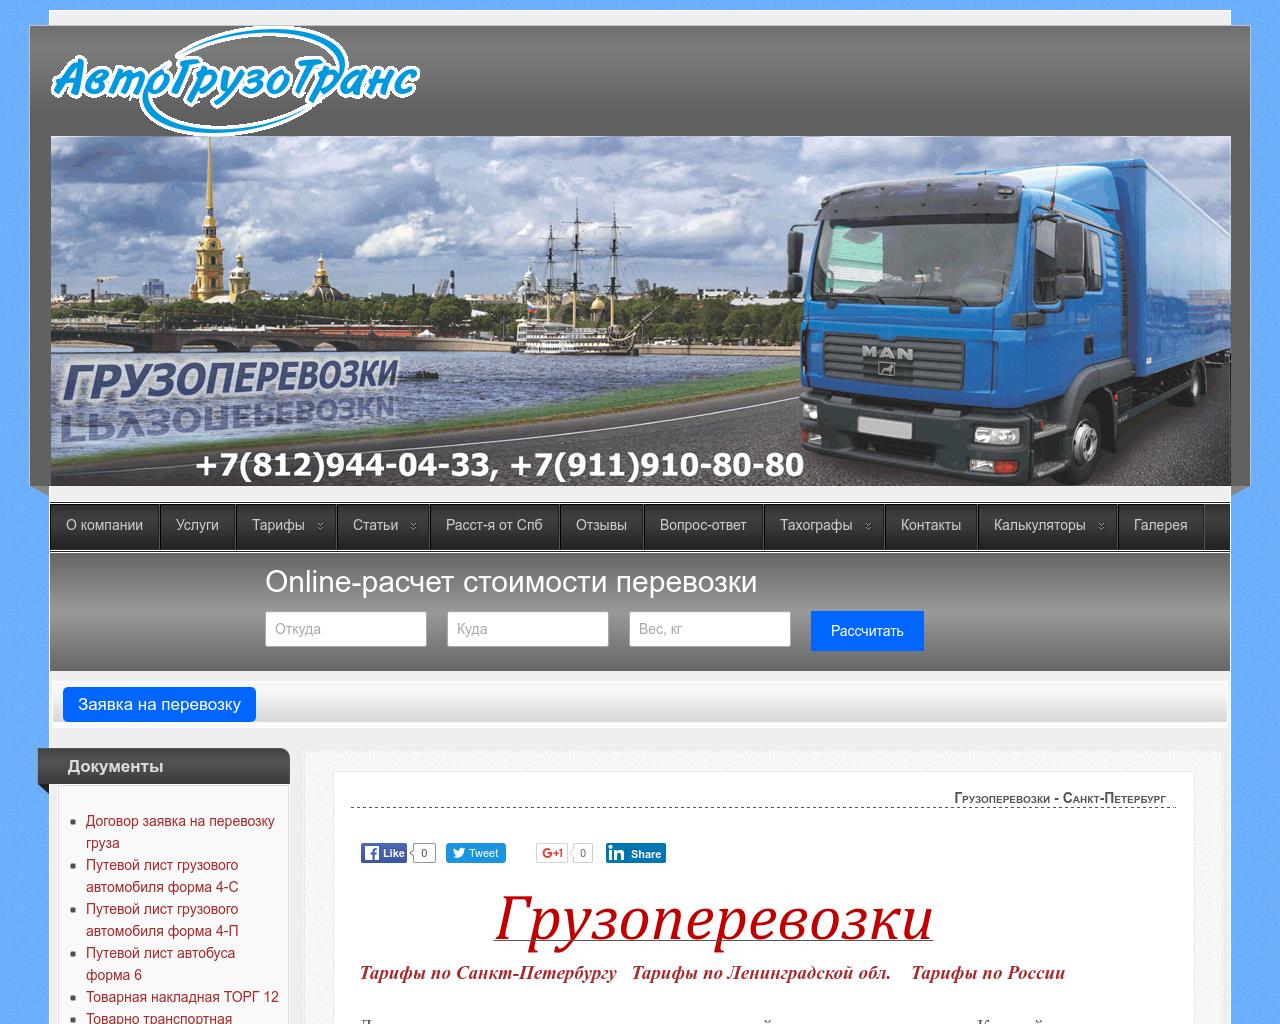 Изображение сайта avtogruzotrans.ru в разрешении 1280x1024